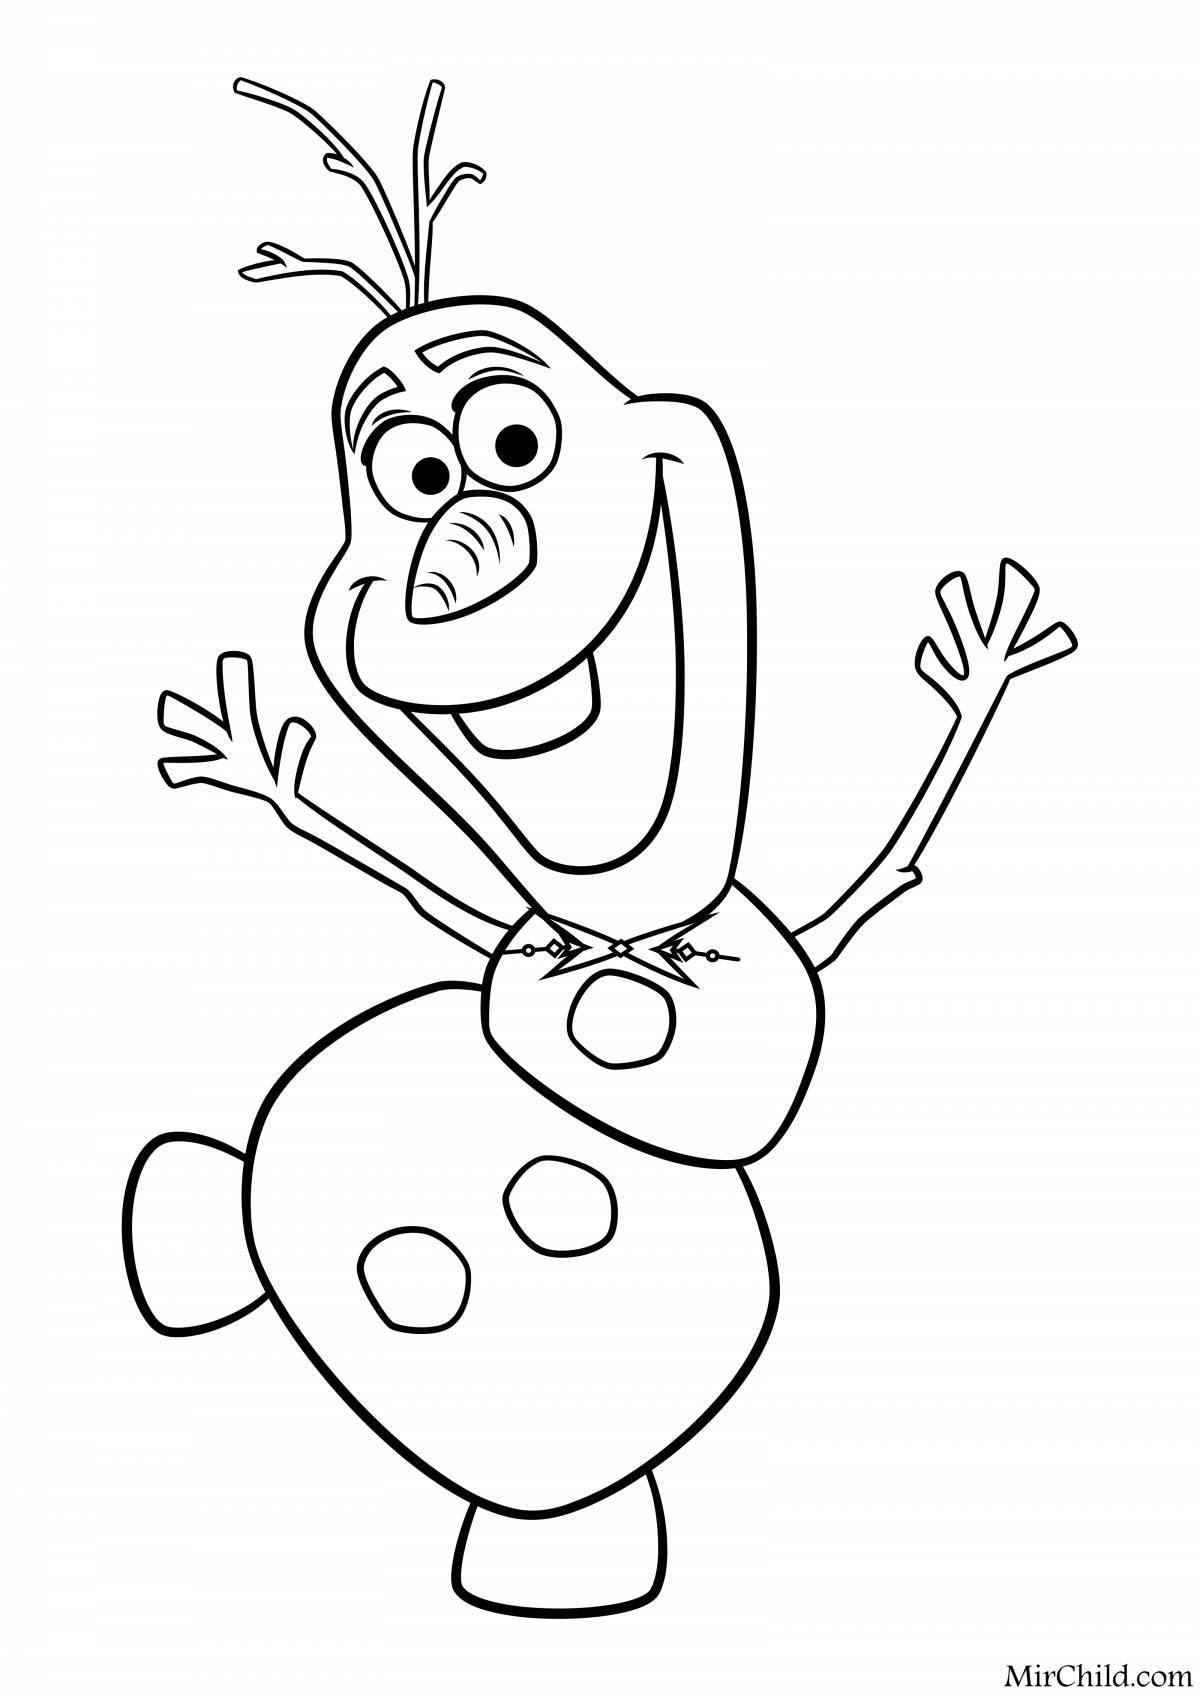 Olaf fun coloring